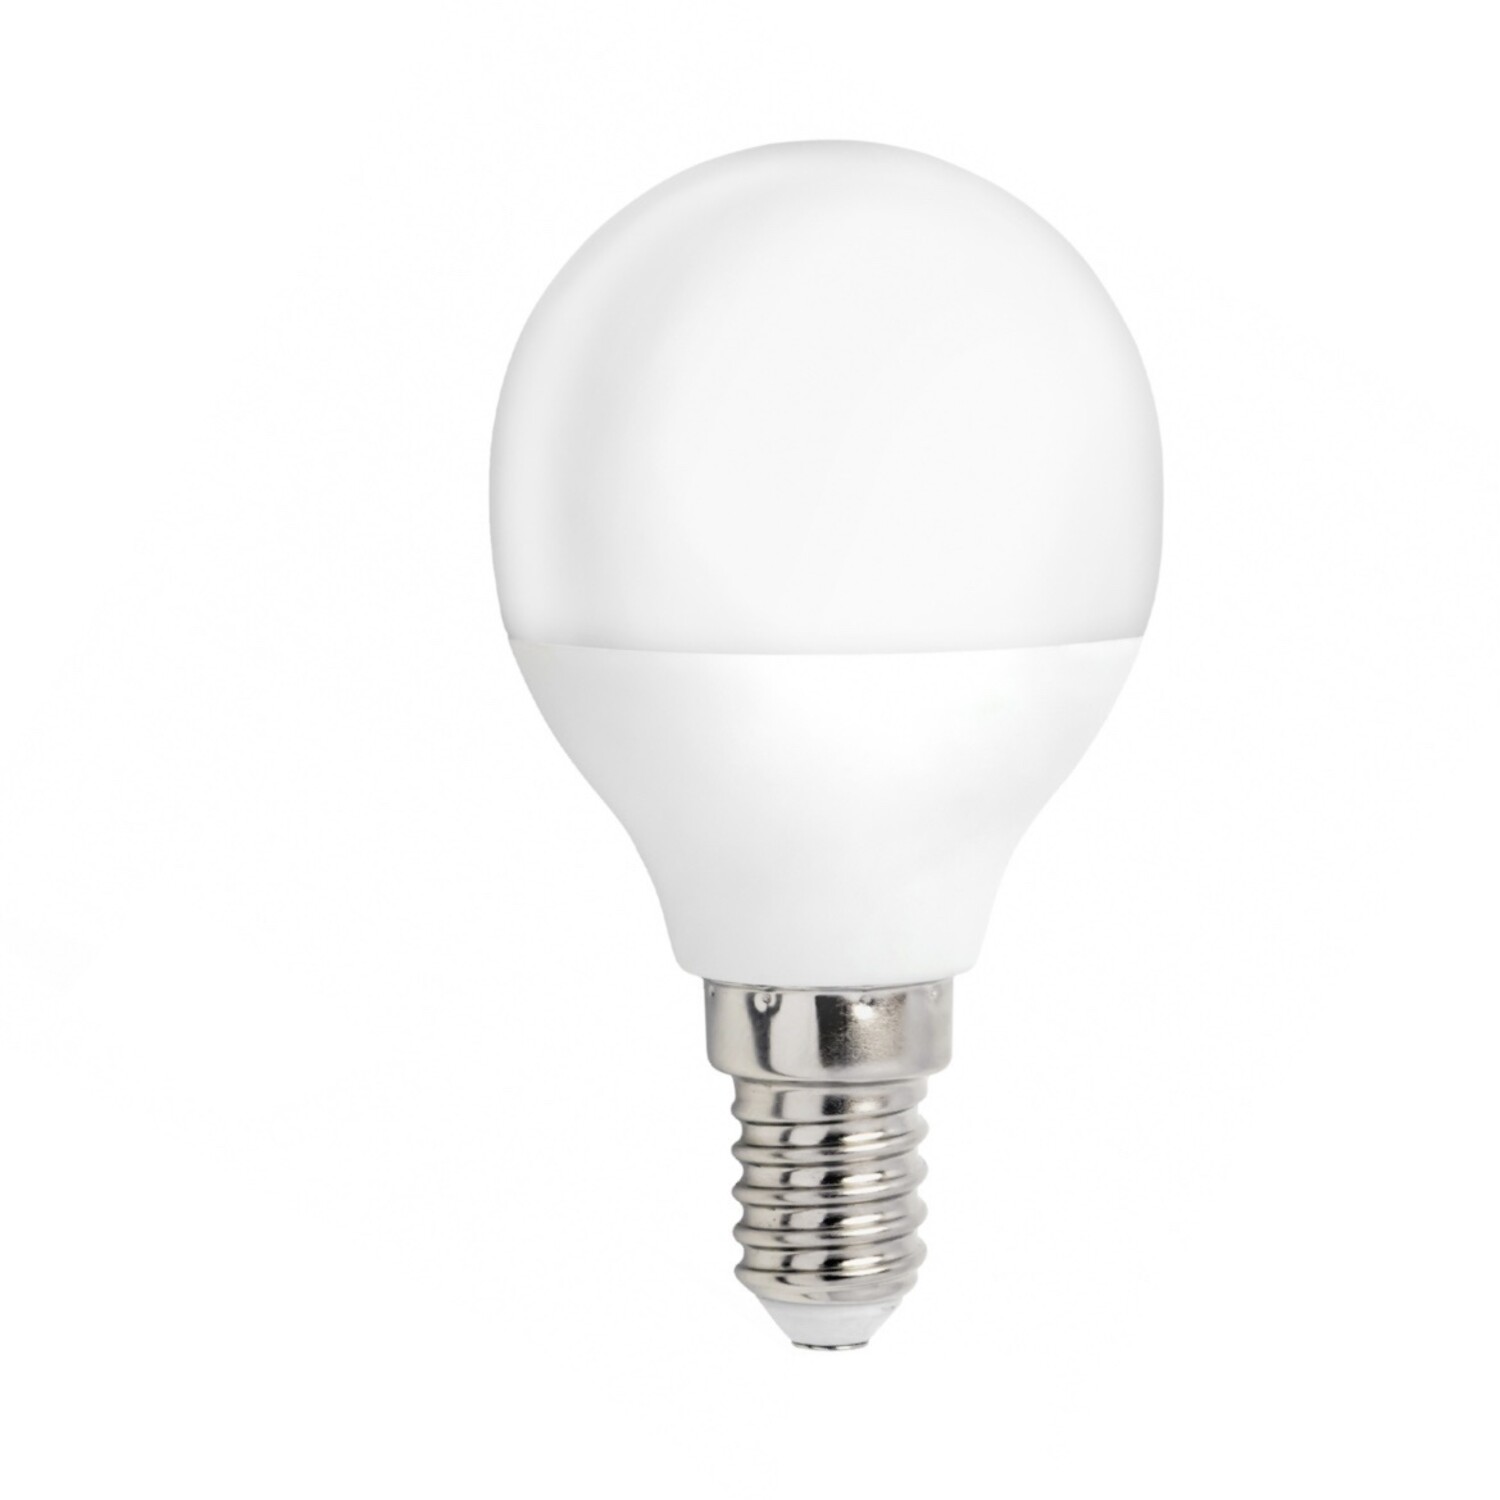 Warmweiß E14 Lampe entspricht 4W LED 25W 3000K -